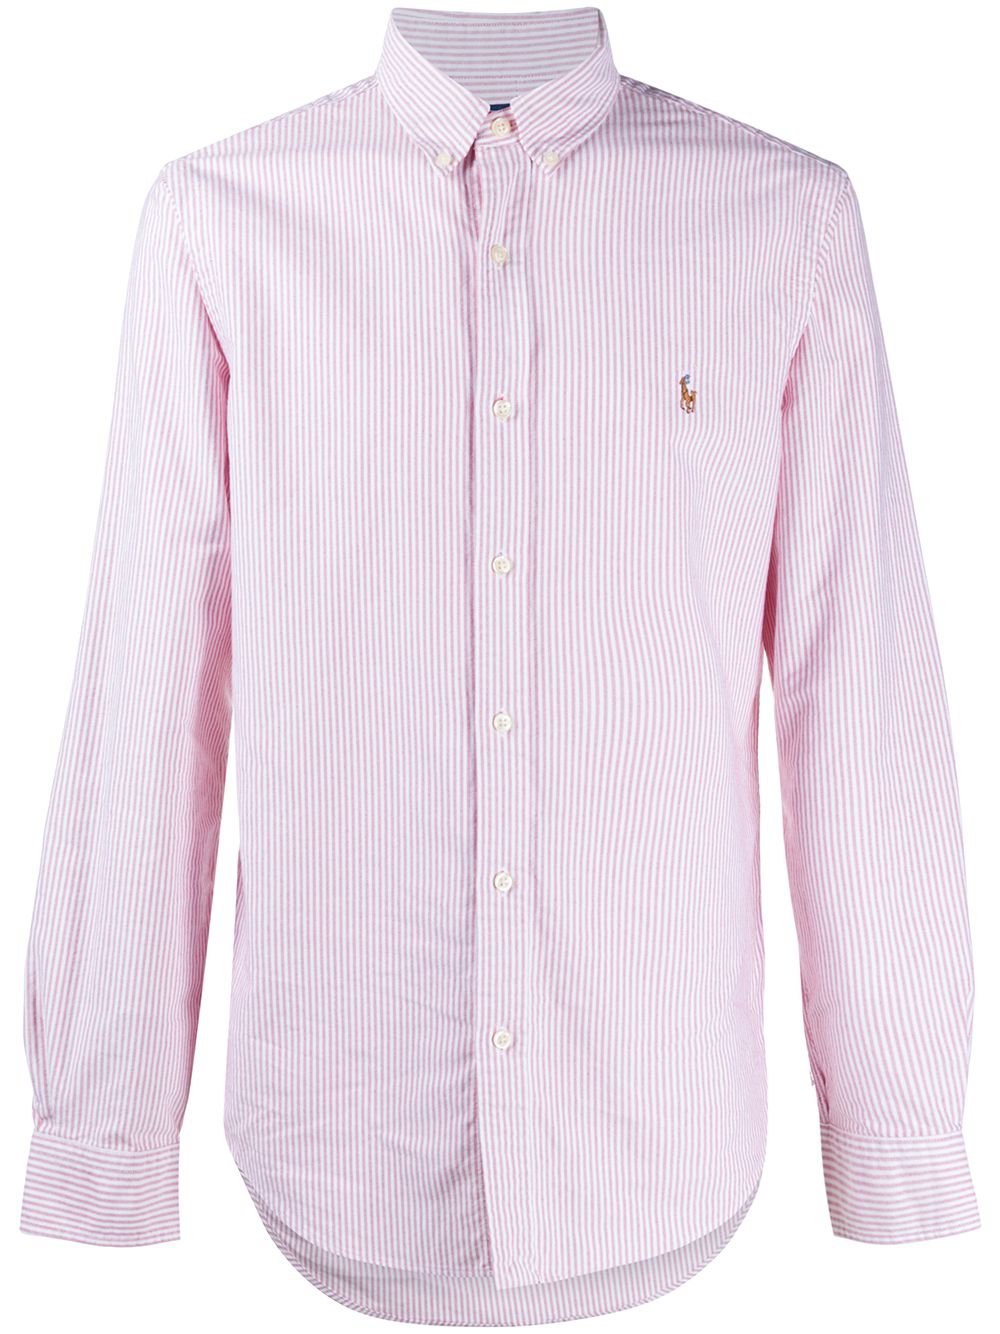 Розовая рубашка в полоску. Рубашка нейтральных цветов.